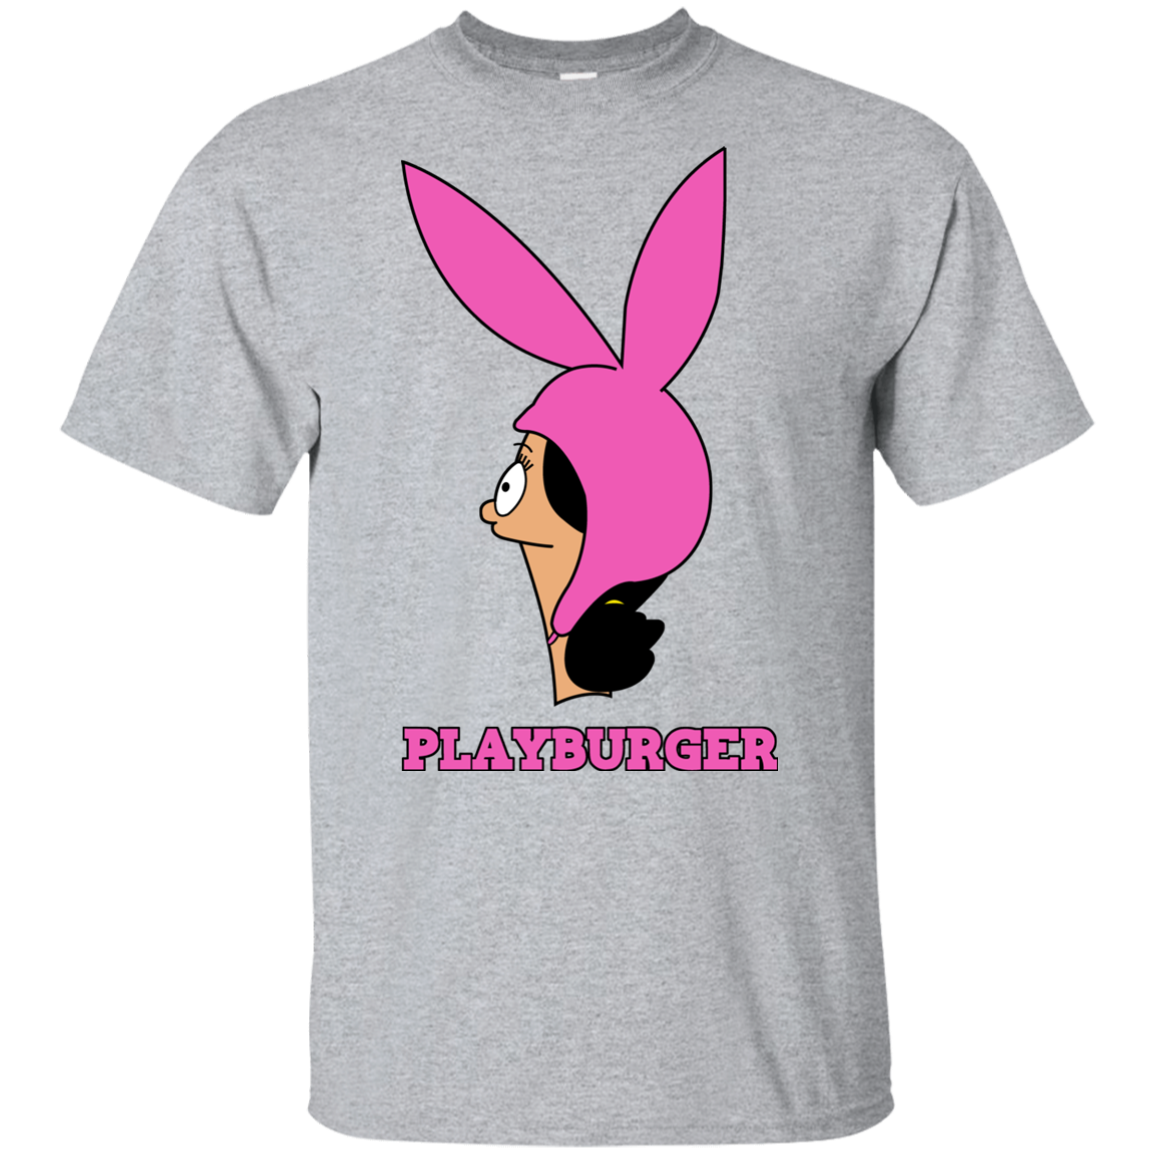 Playburger Youth T-Shirt